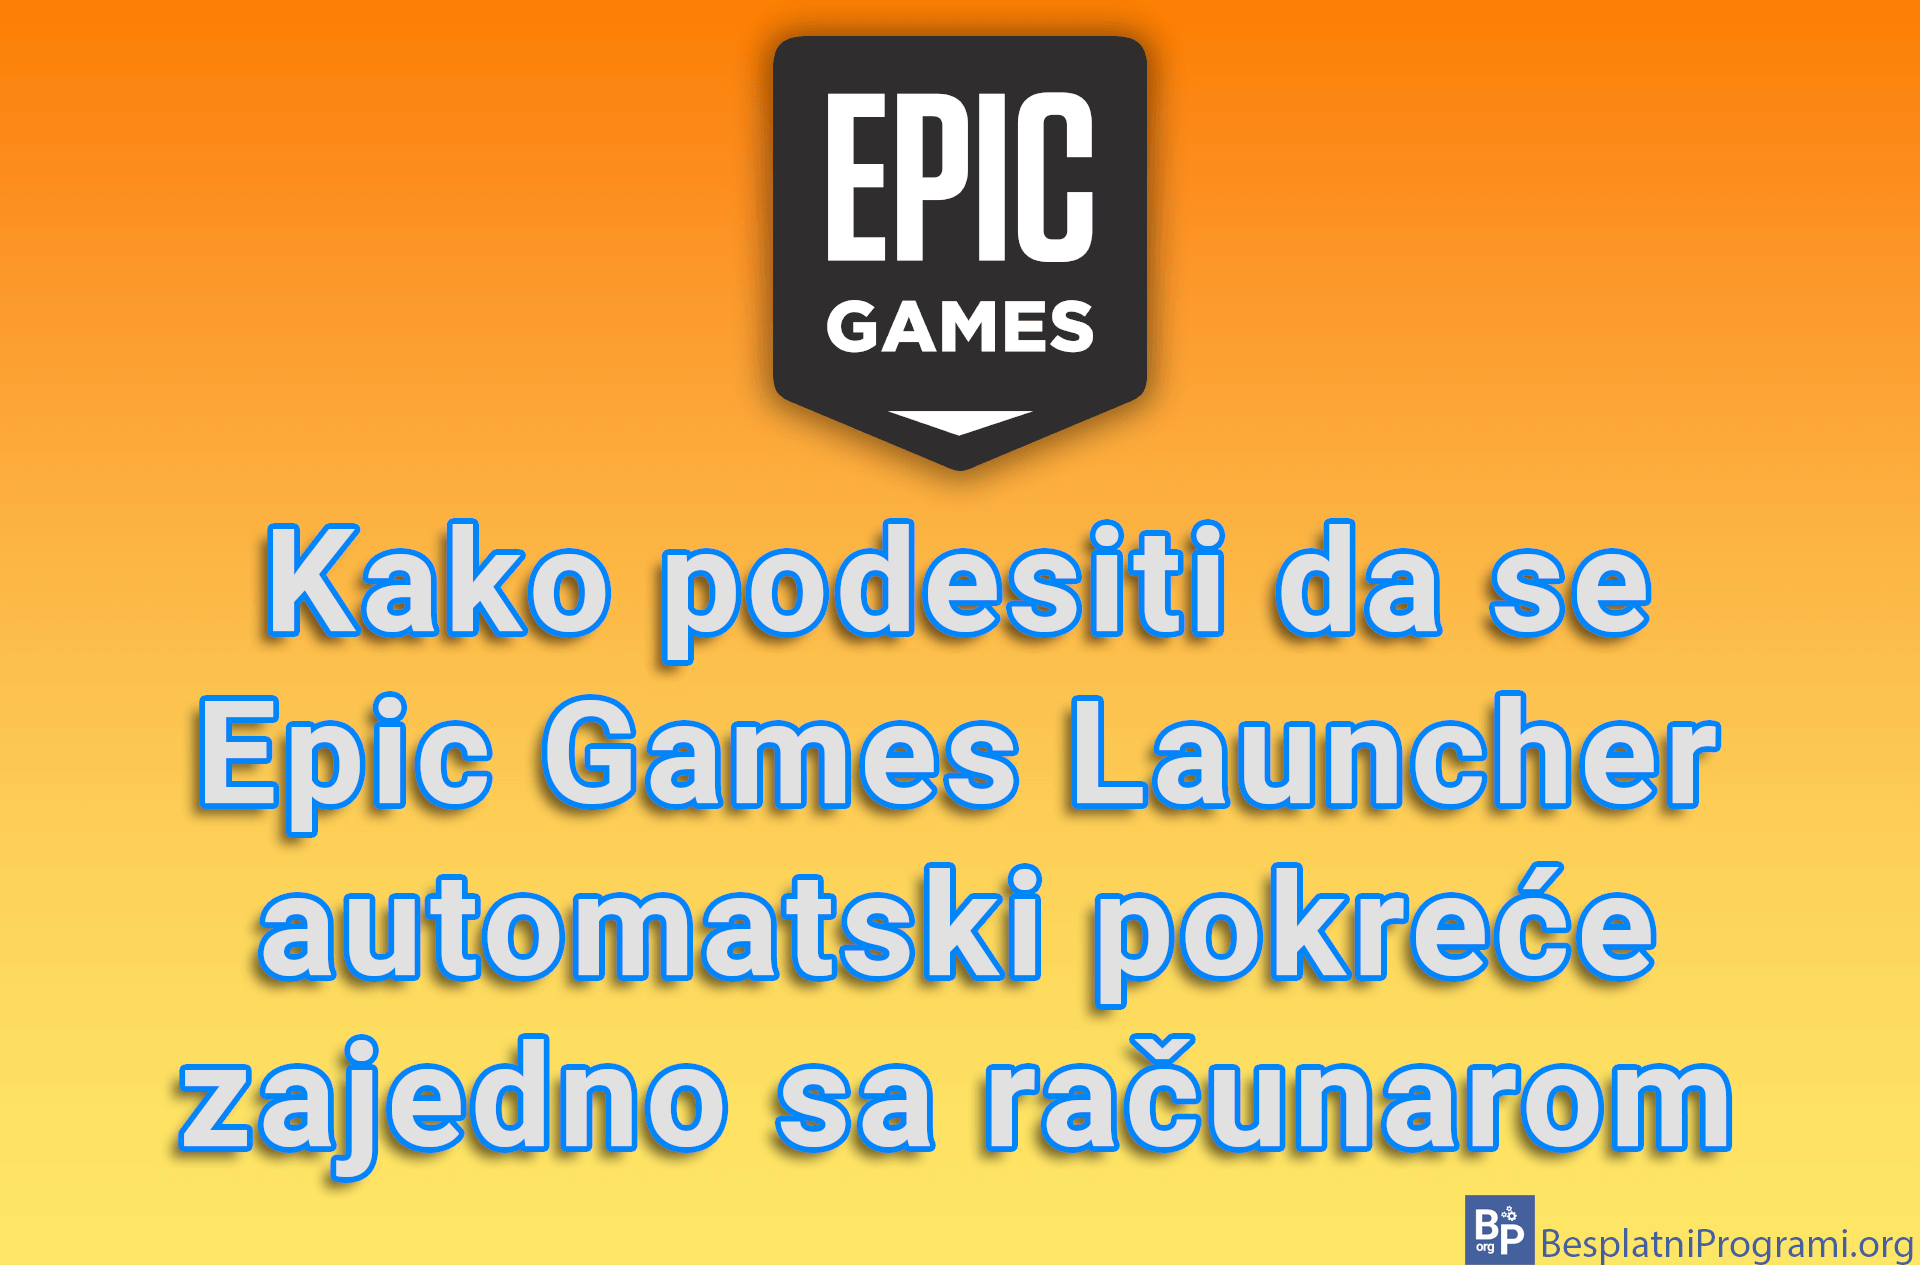 Kako podesiti da se Epic Games Launcher automatski pokreće zajedno sa računarom